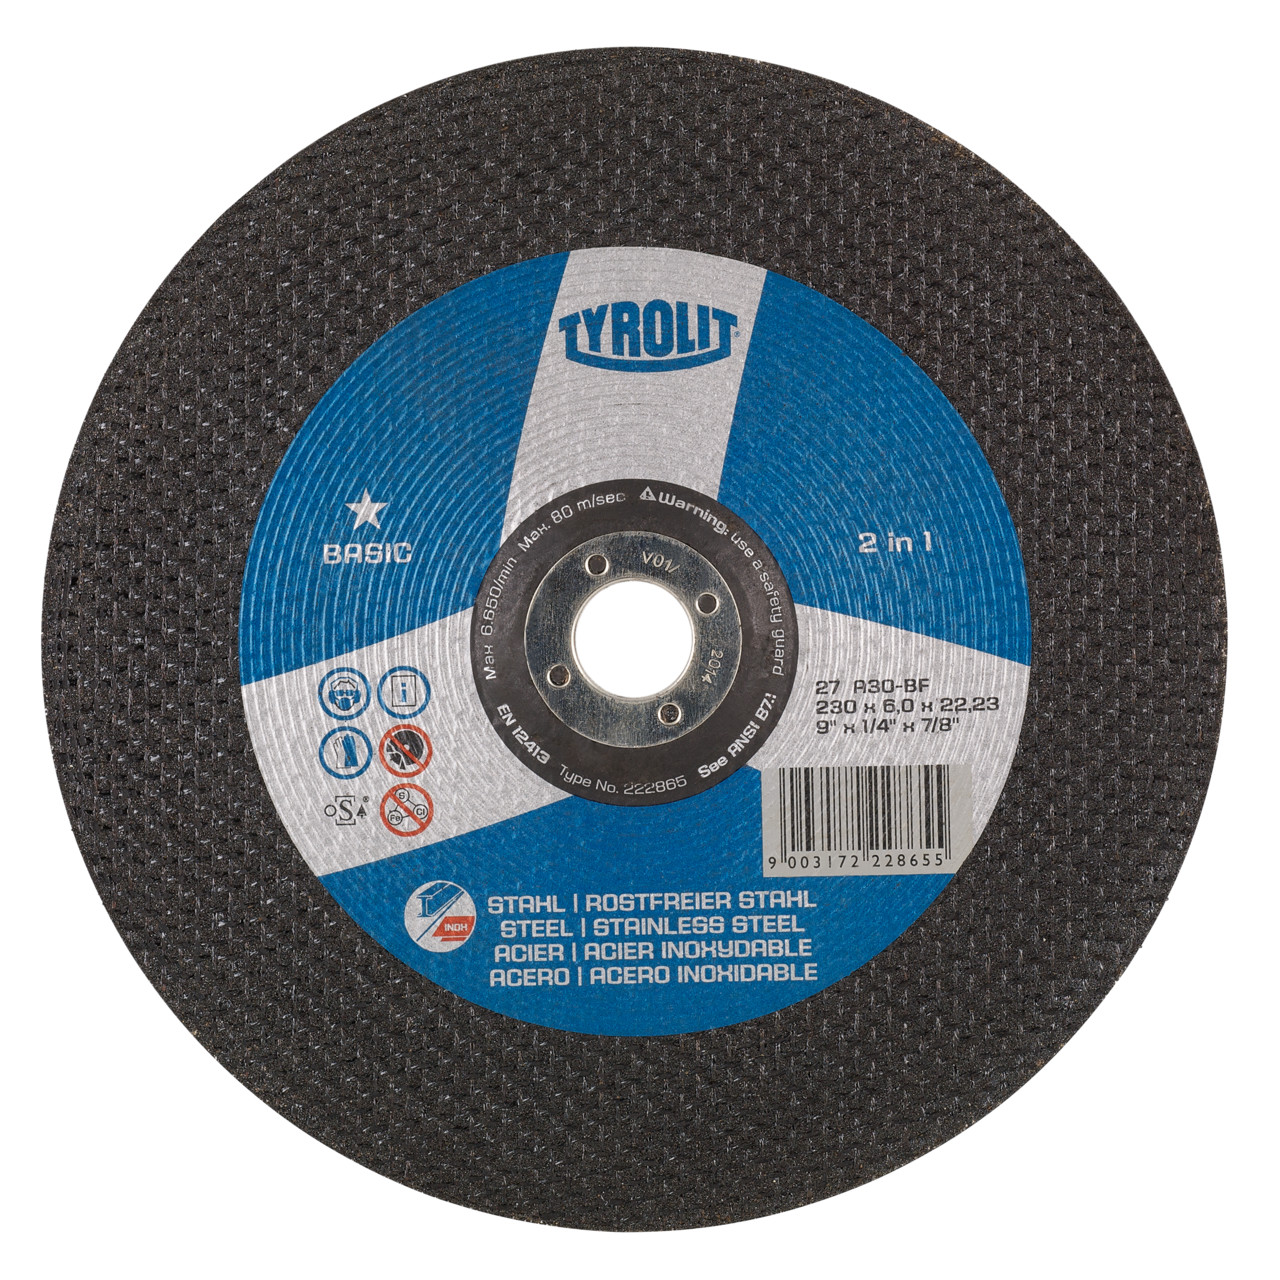 TYROLIT disco de desbaste DxUxH 230x8x22.23 2en1 para acero y acero inoxidable, forma: 27 - versión offset, Art. 222870